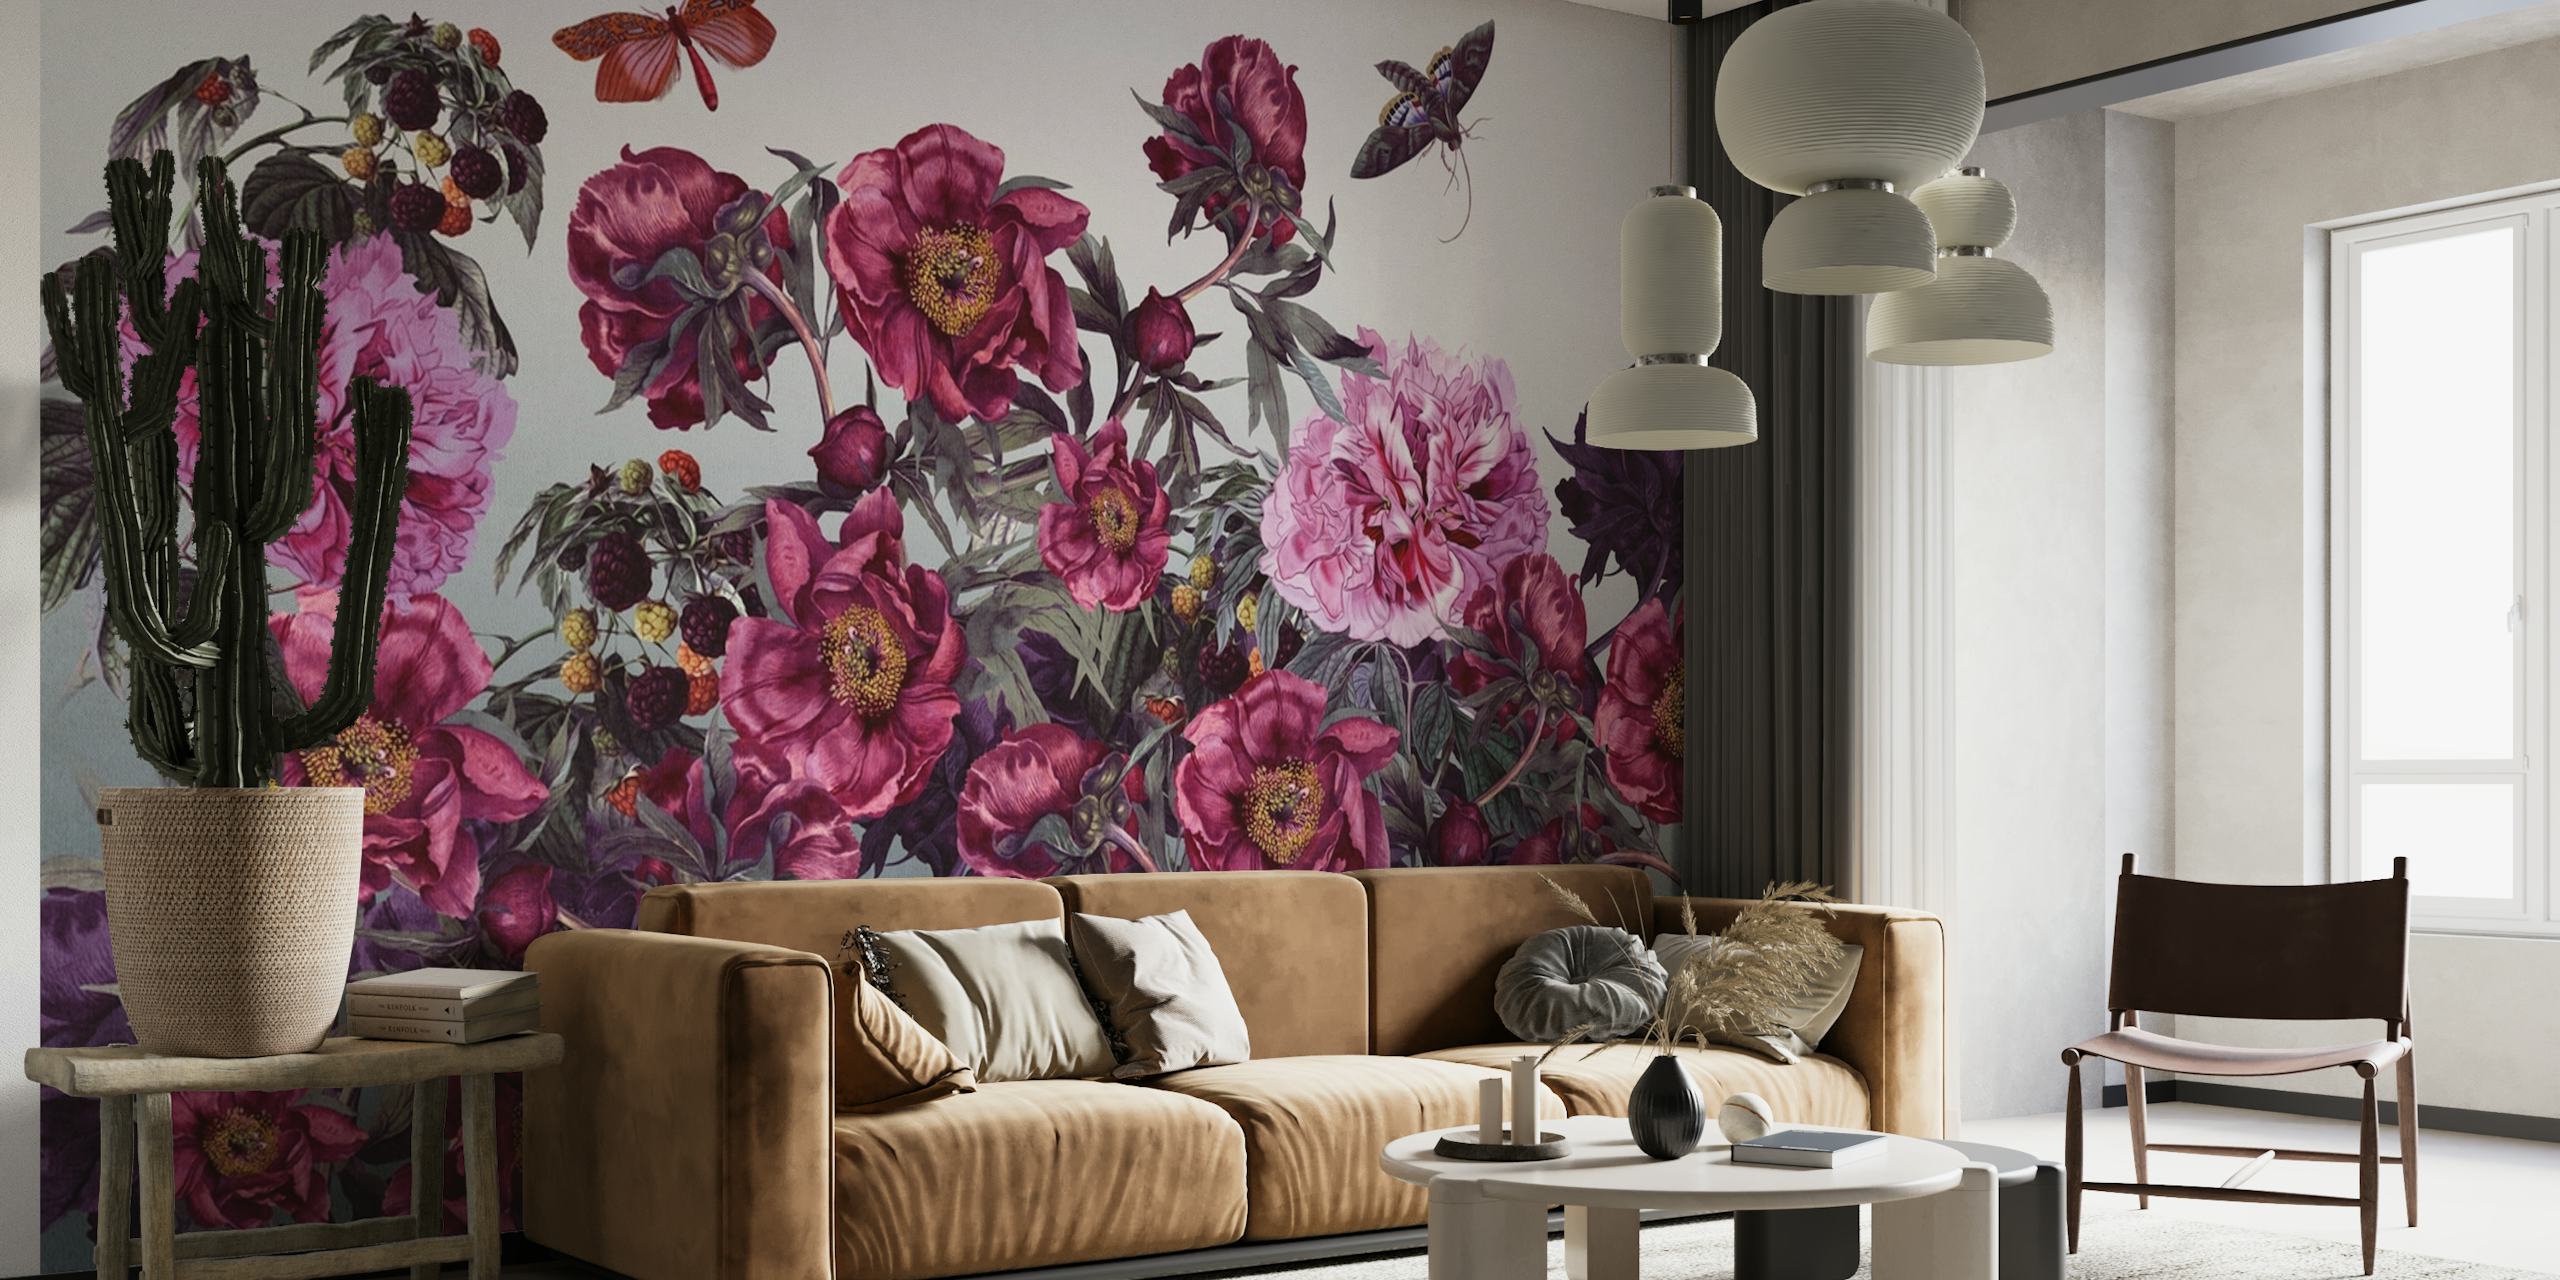 Fototapete mit verschiedenen rosa und lila Pfingstrosenblüten, grünem Blattwerk und einem Schmetterling.